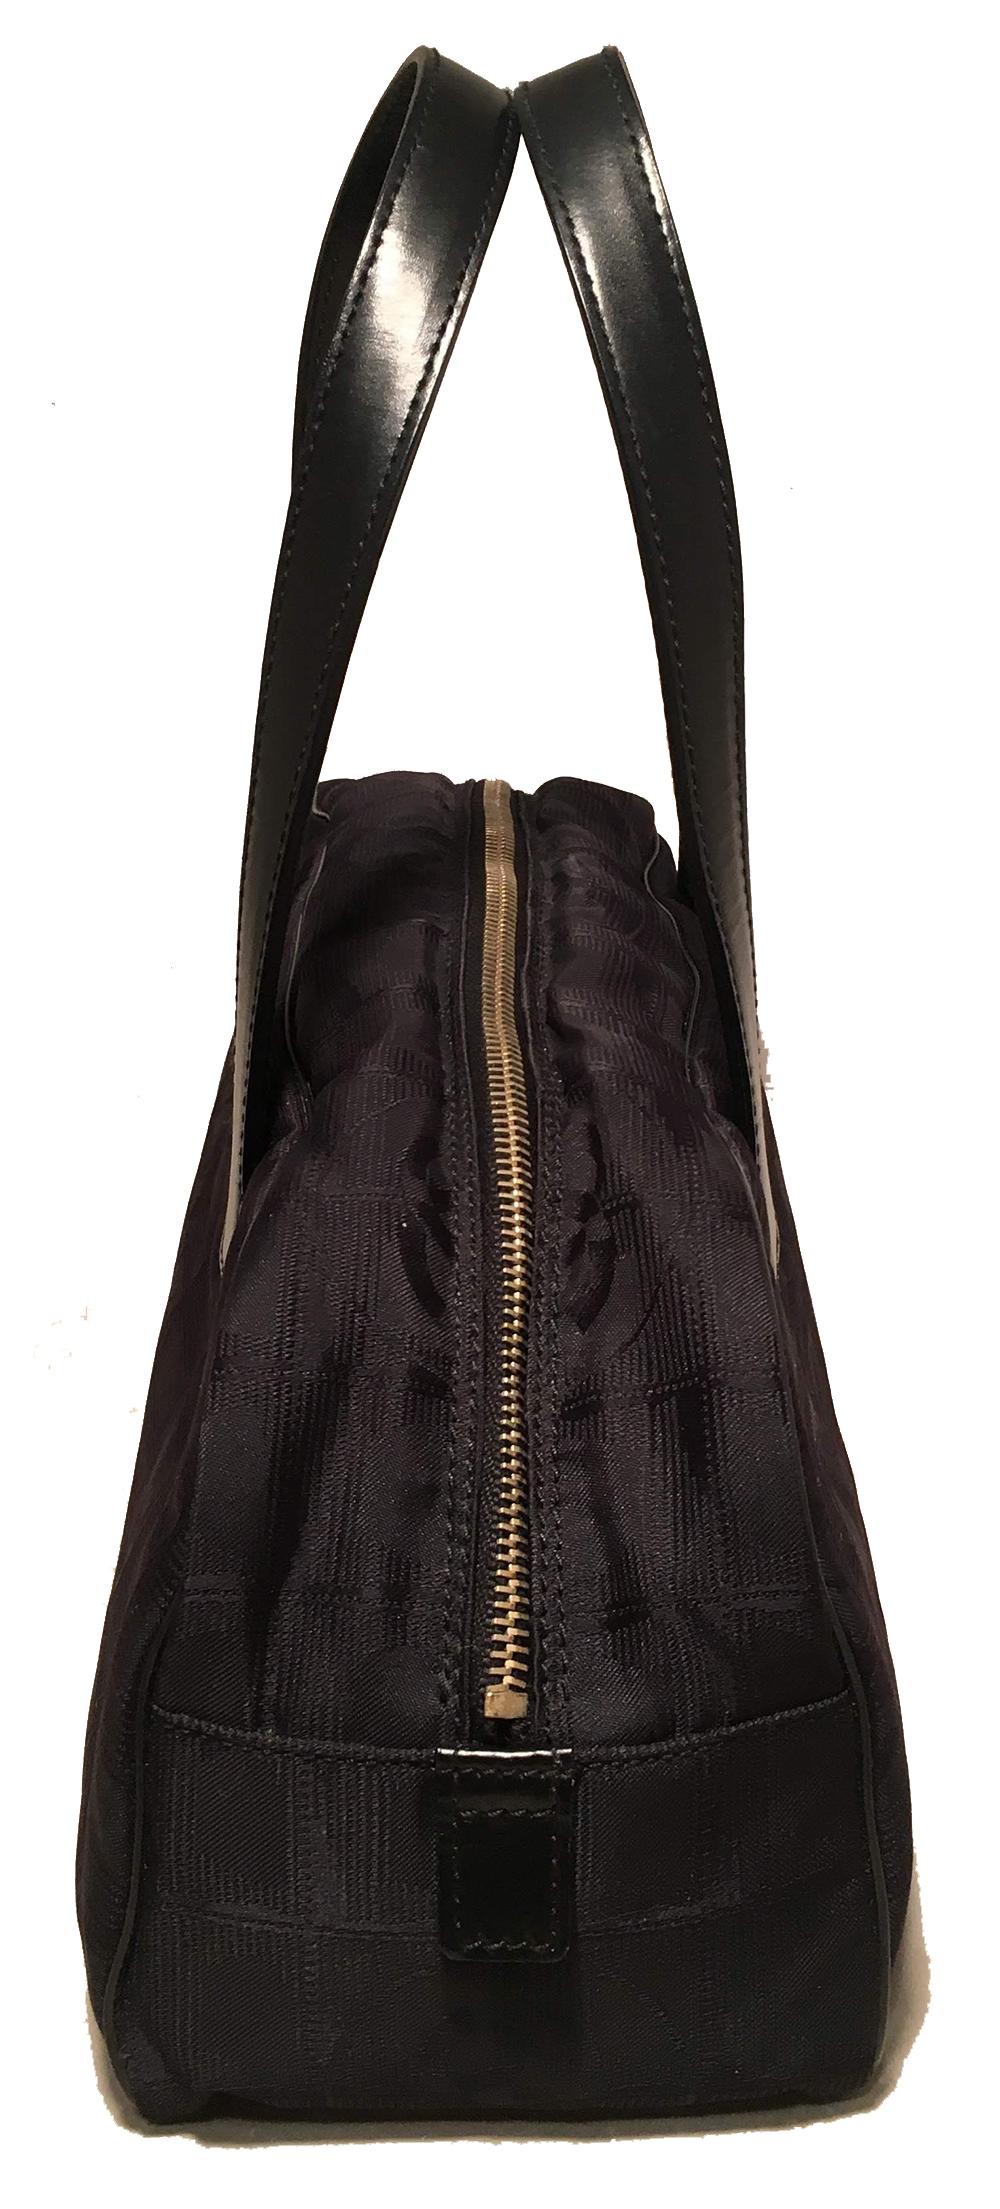 Chanel schwarze Nylon Reisetasche in ausgezeichnetem Zustand. Schwarzer, geprägter Nylonkörper mit schwarzen Ledergriffen, paspelierten Kanten, goldenem Reißverschluss und 4 Füßen am Boden. Innenraum aus Nylon mit einer Seitentasche mit